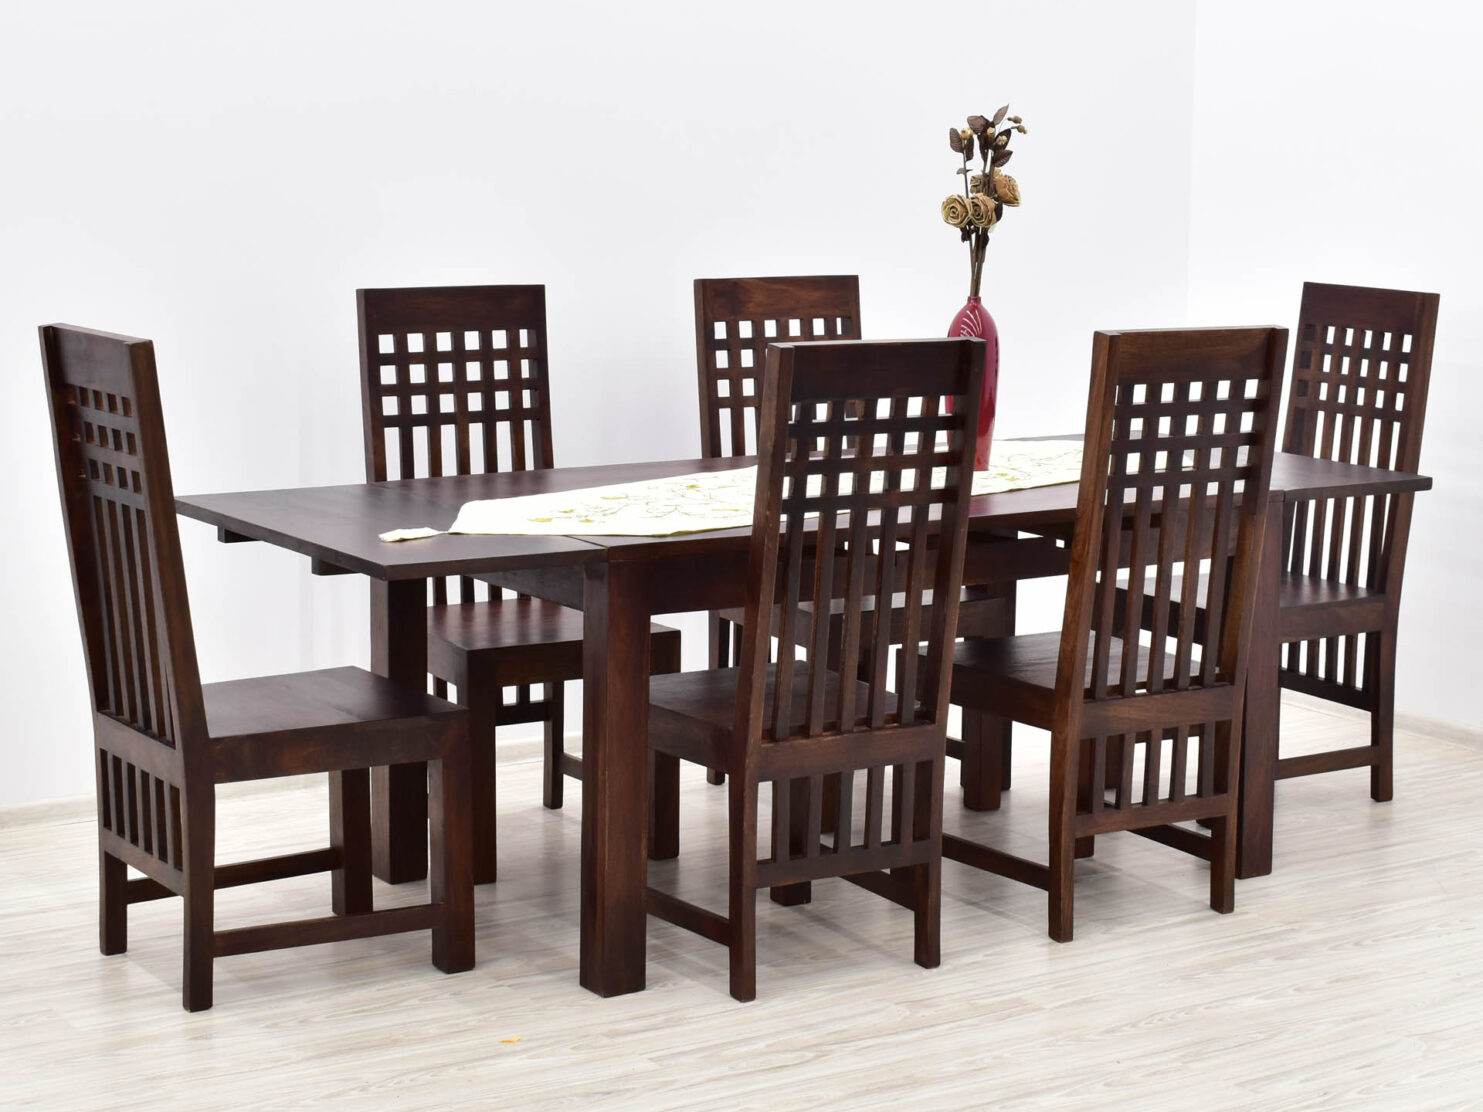 komplet-obiadowy-kolonialny-stol-rozkladany-6-krzesel-lite-drewno-palisander-indyjski-ciemny-braz